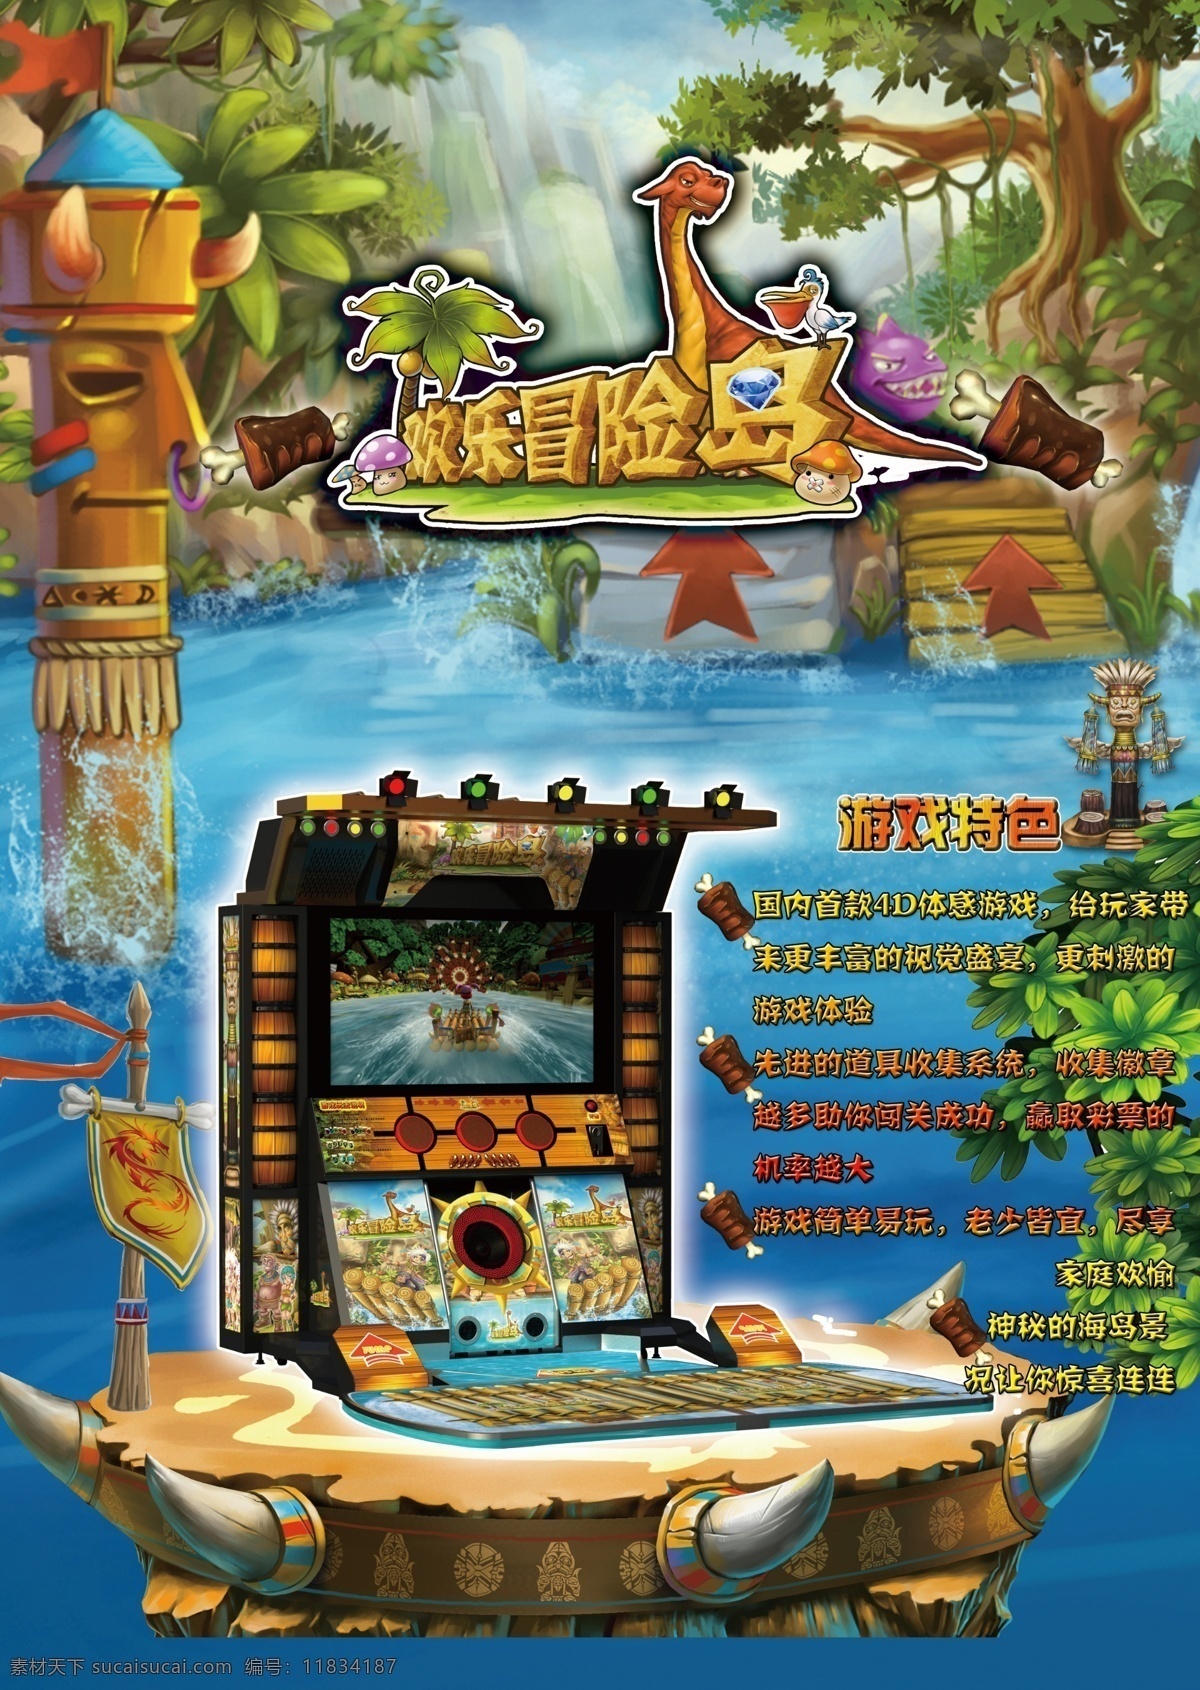 冒险岛 游戏机 传单 游戏机传单 欢乐冒险岛 动漫底图 仙境 dm宣传单 广告设计模板 源文件 黑色